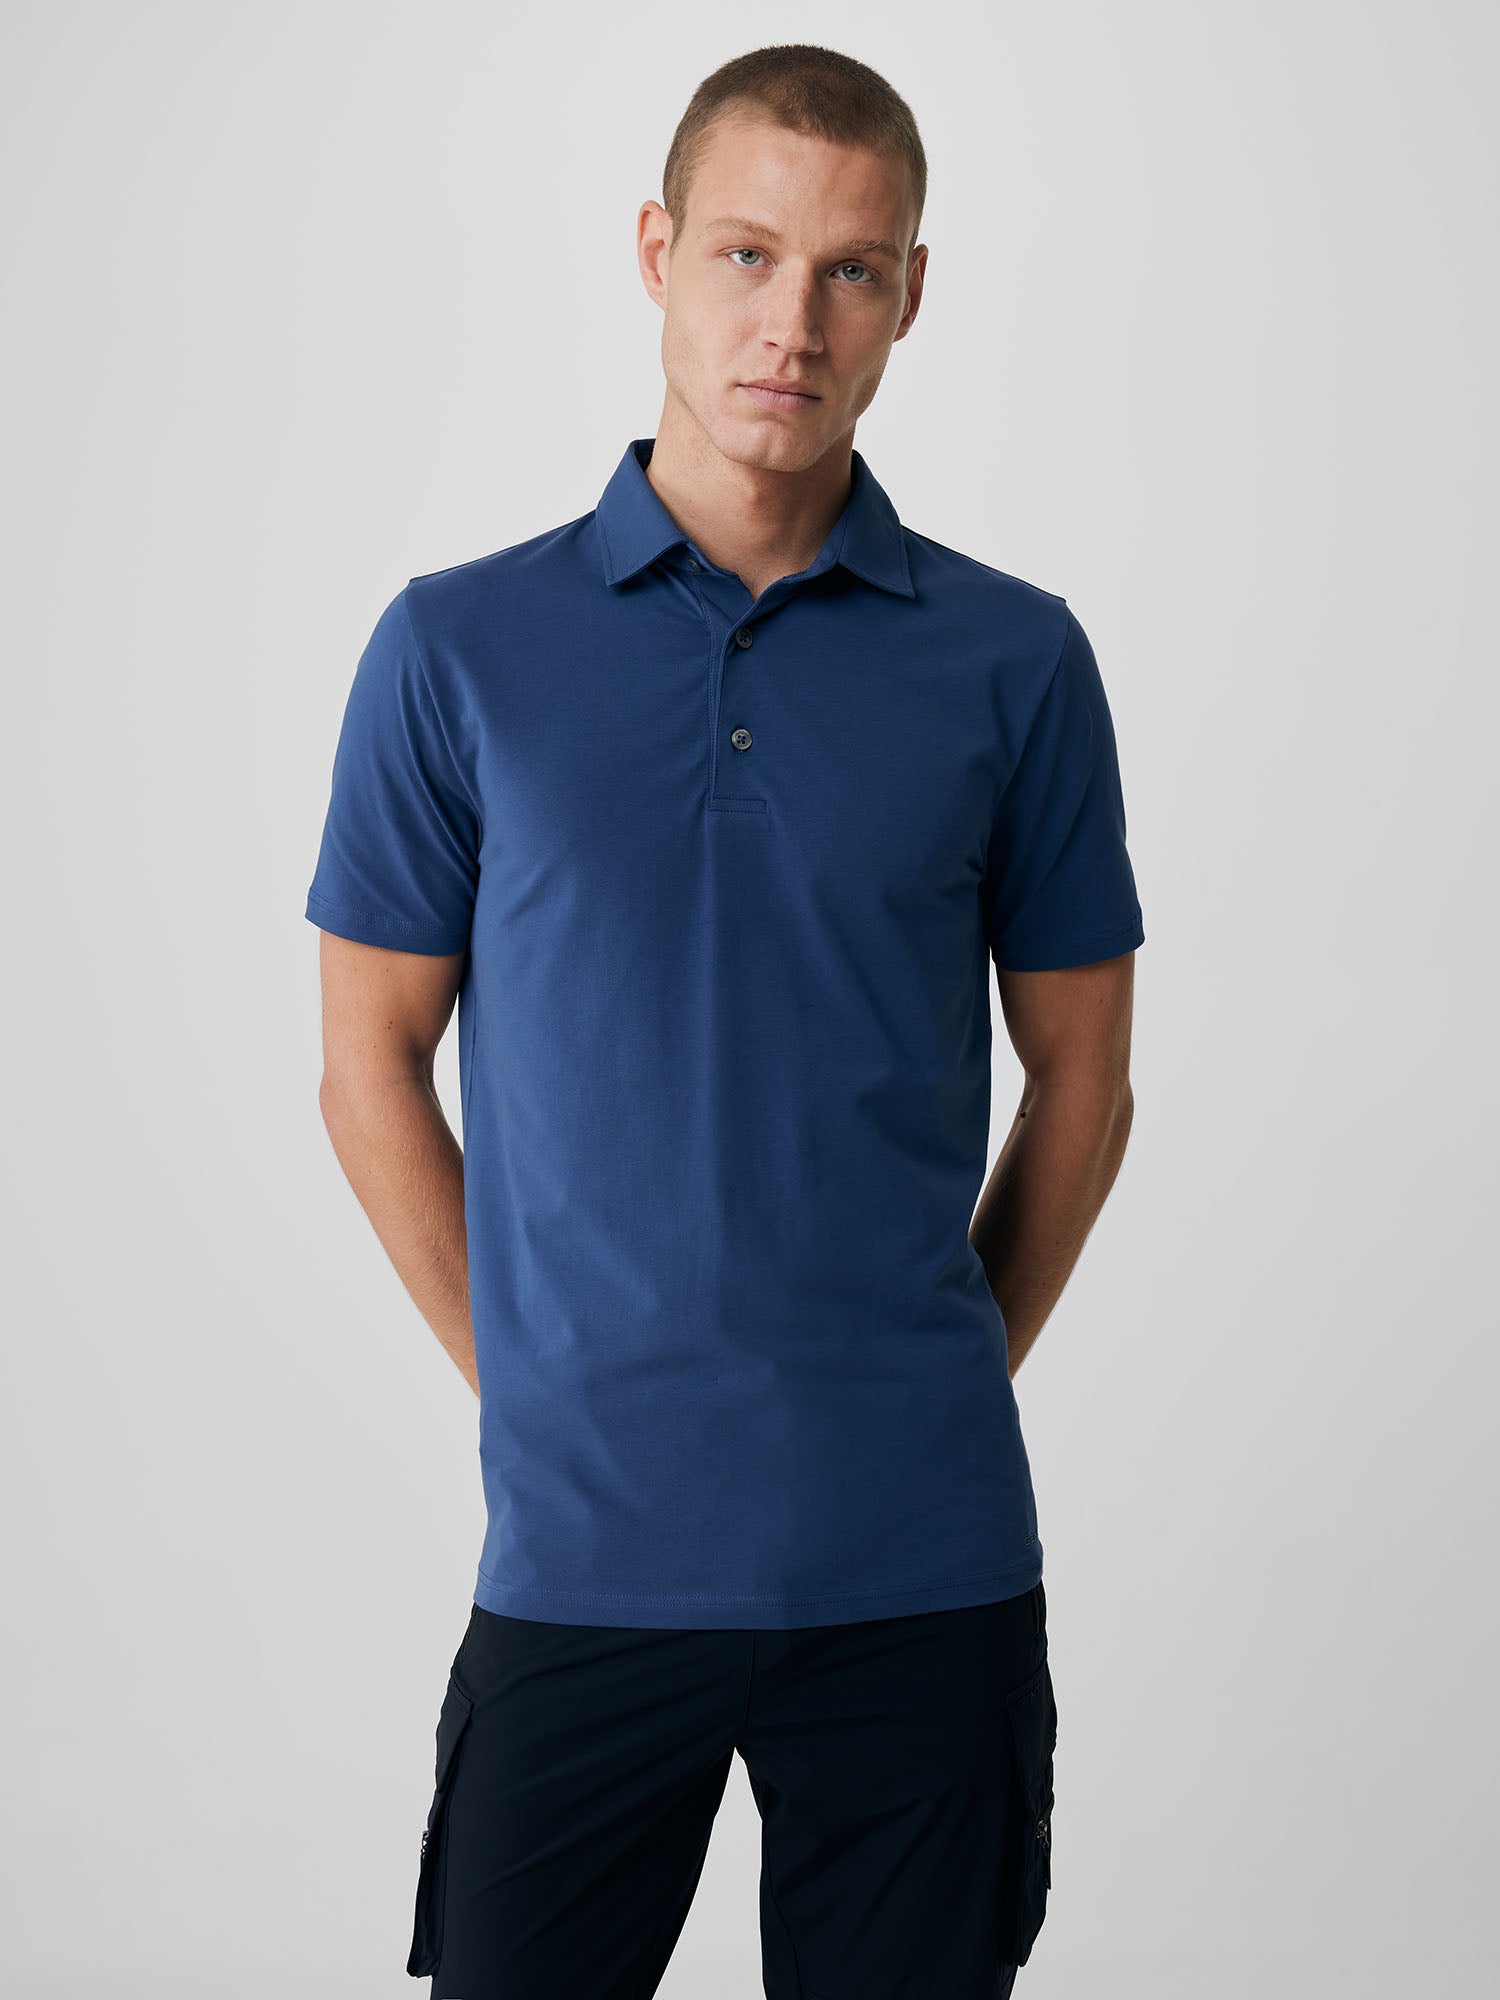 Genti Polo Shirt - Raf blauw